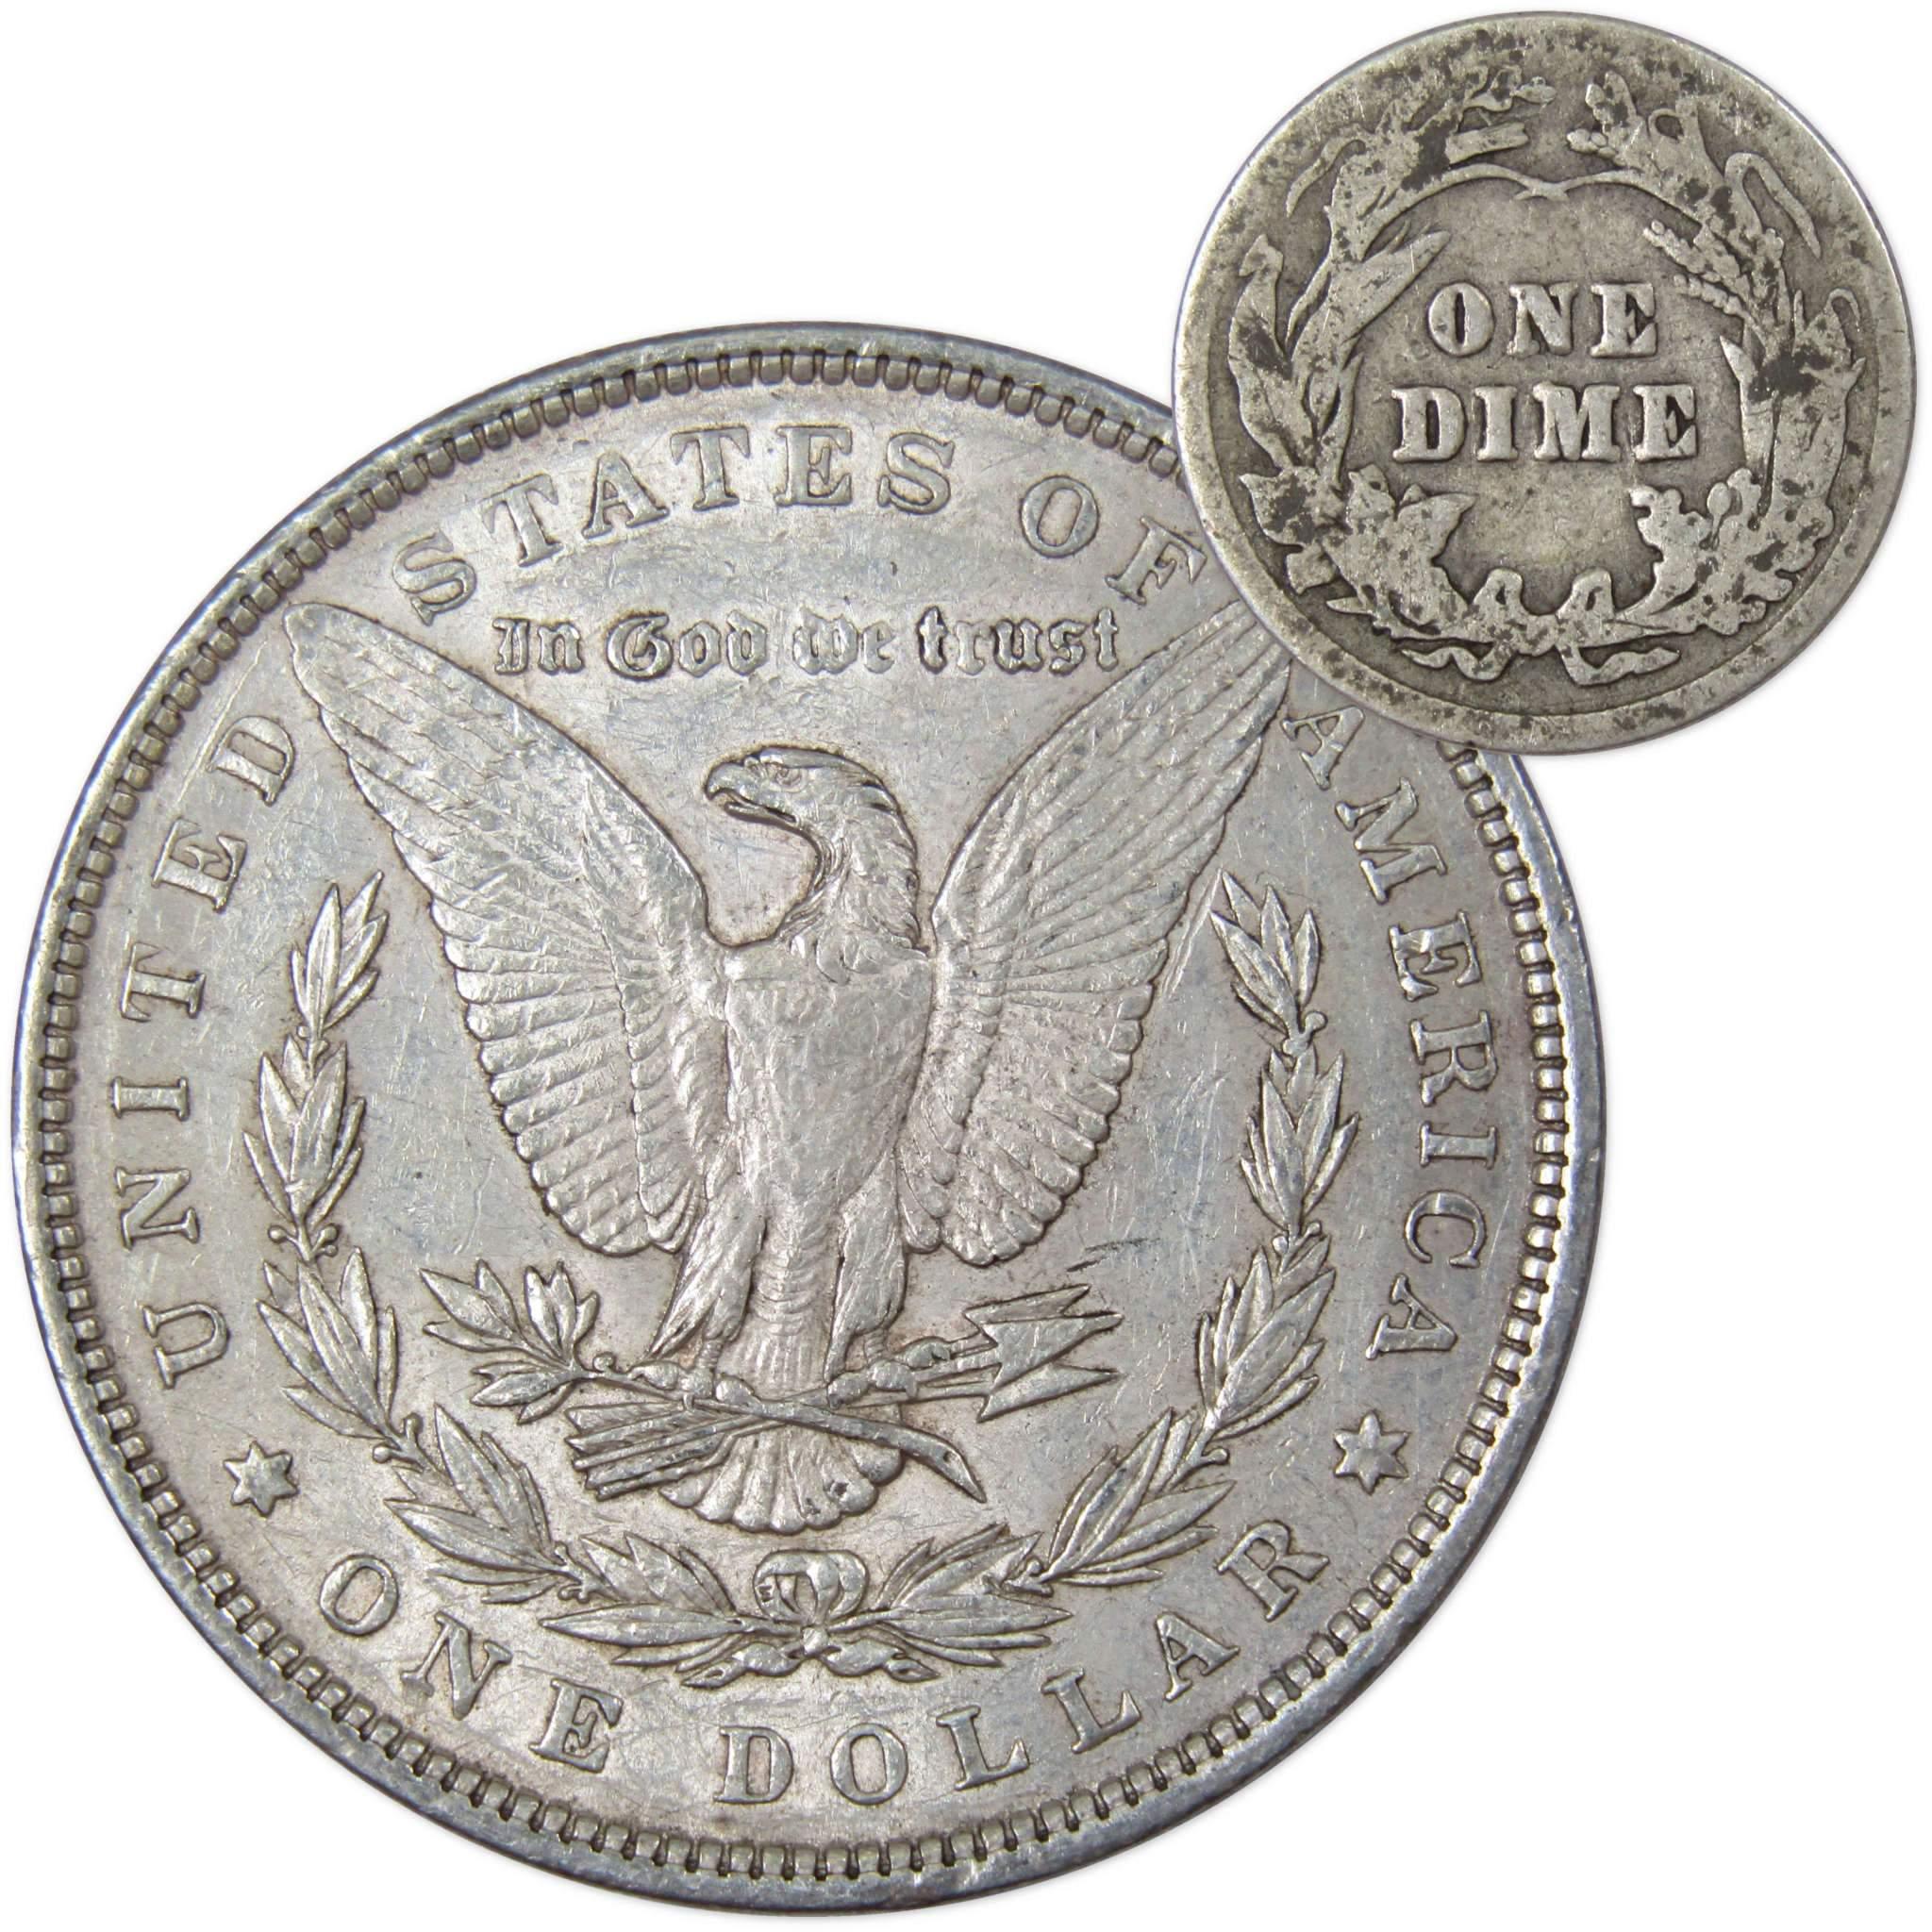 1897 Morgan Dollar XF EF Extremely Fine 90% Silver with 1913 Barber Dime G Good - Morgan coin - Morgan silver dollar - Morgan silver dollar for sale - Profile Coins &amp; Collectibles